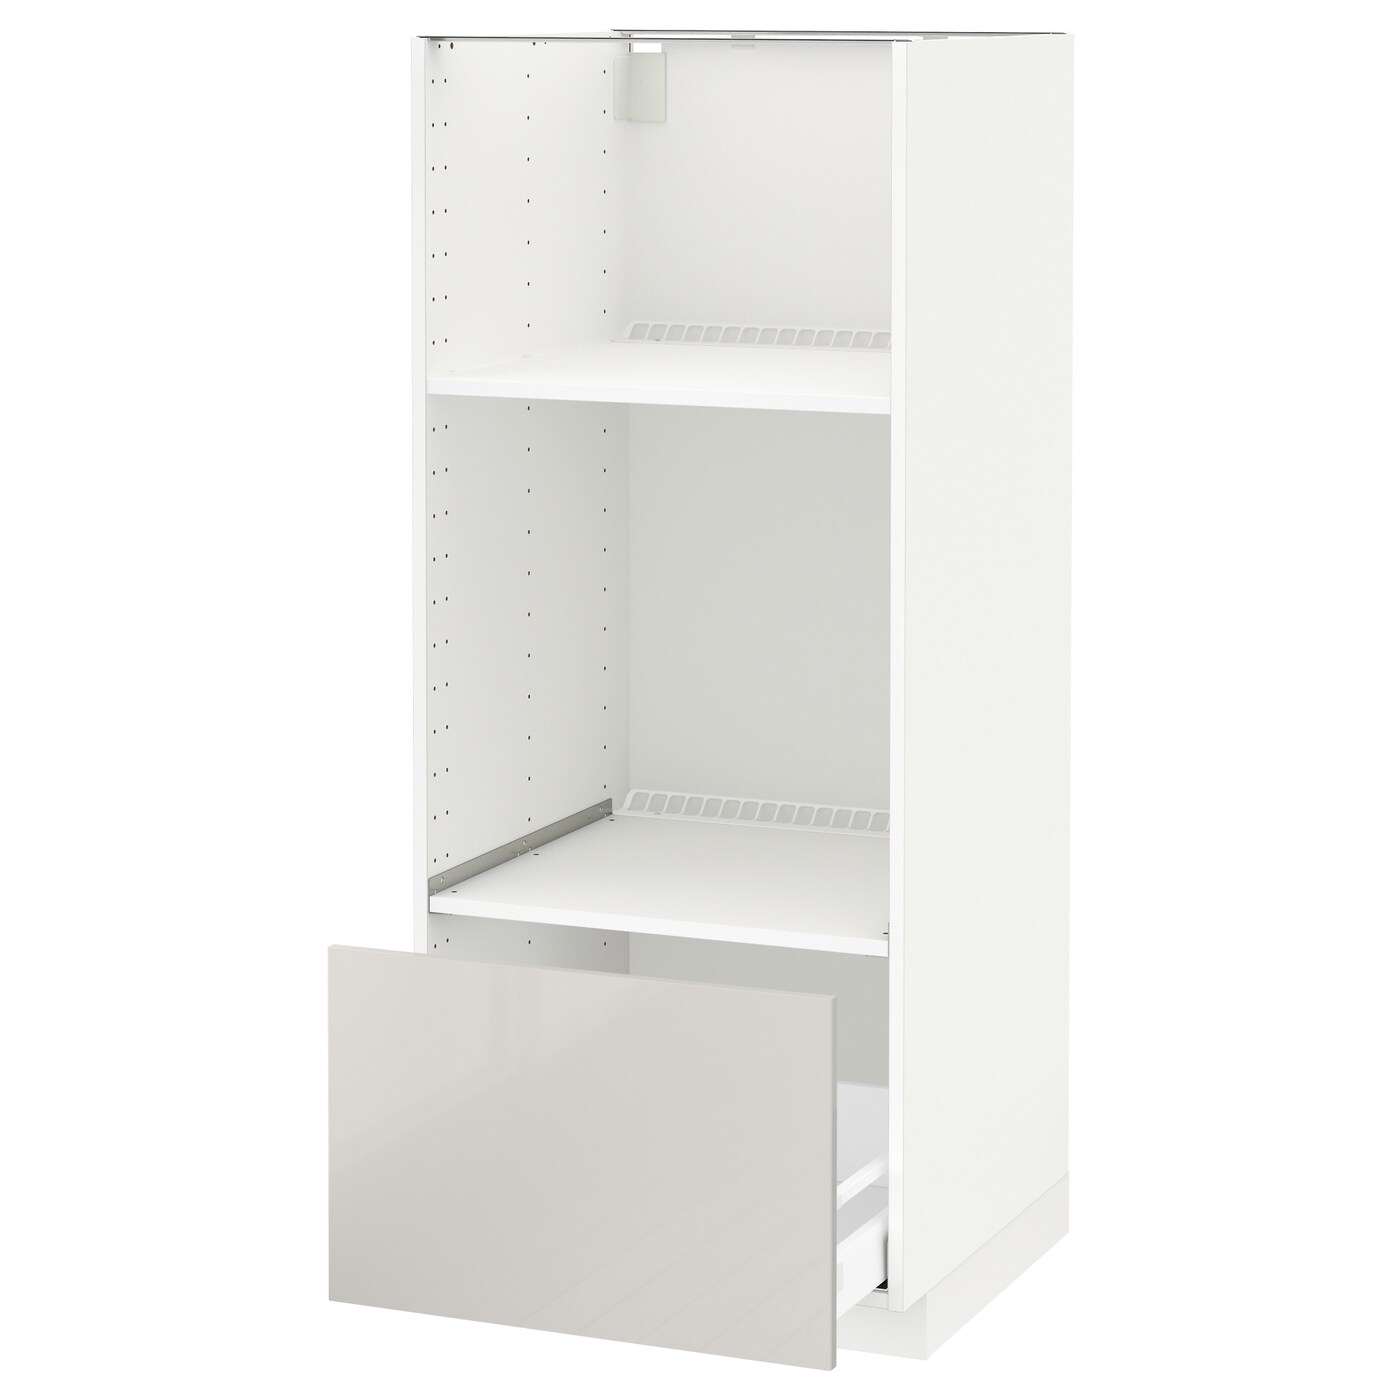 Напольный кухонный шкаф  - IKEA METOD MAXIMERA, 148x62x60см, белый/светло-серый, МЕТОД МАКСИМЕРА ИКЕА